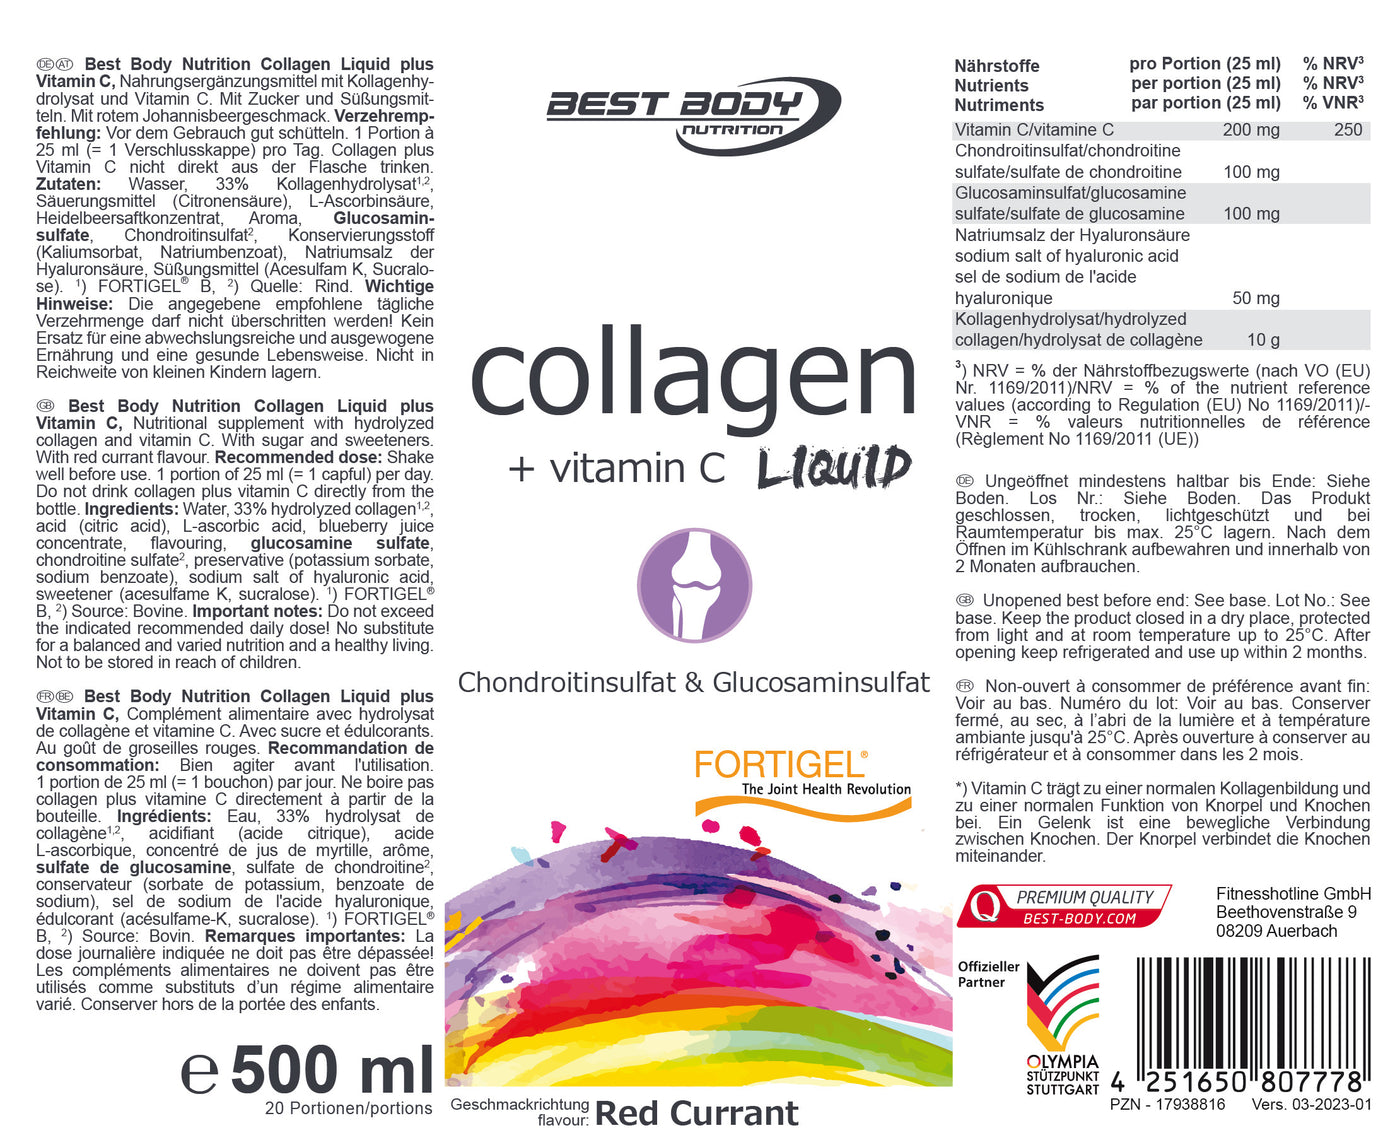 Collagen Liquid plus Vitamin C - Red Currant - 500 ml Flasche